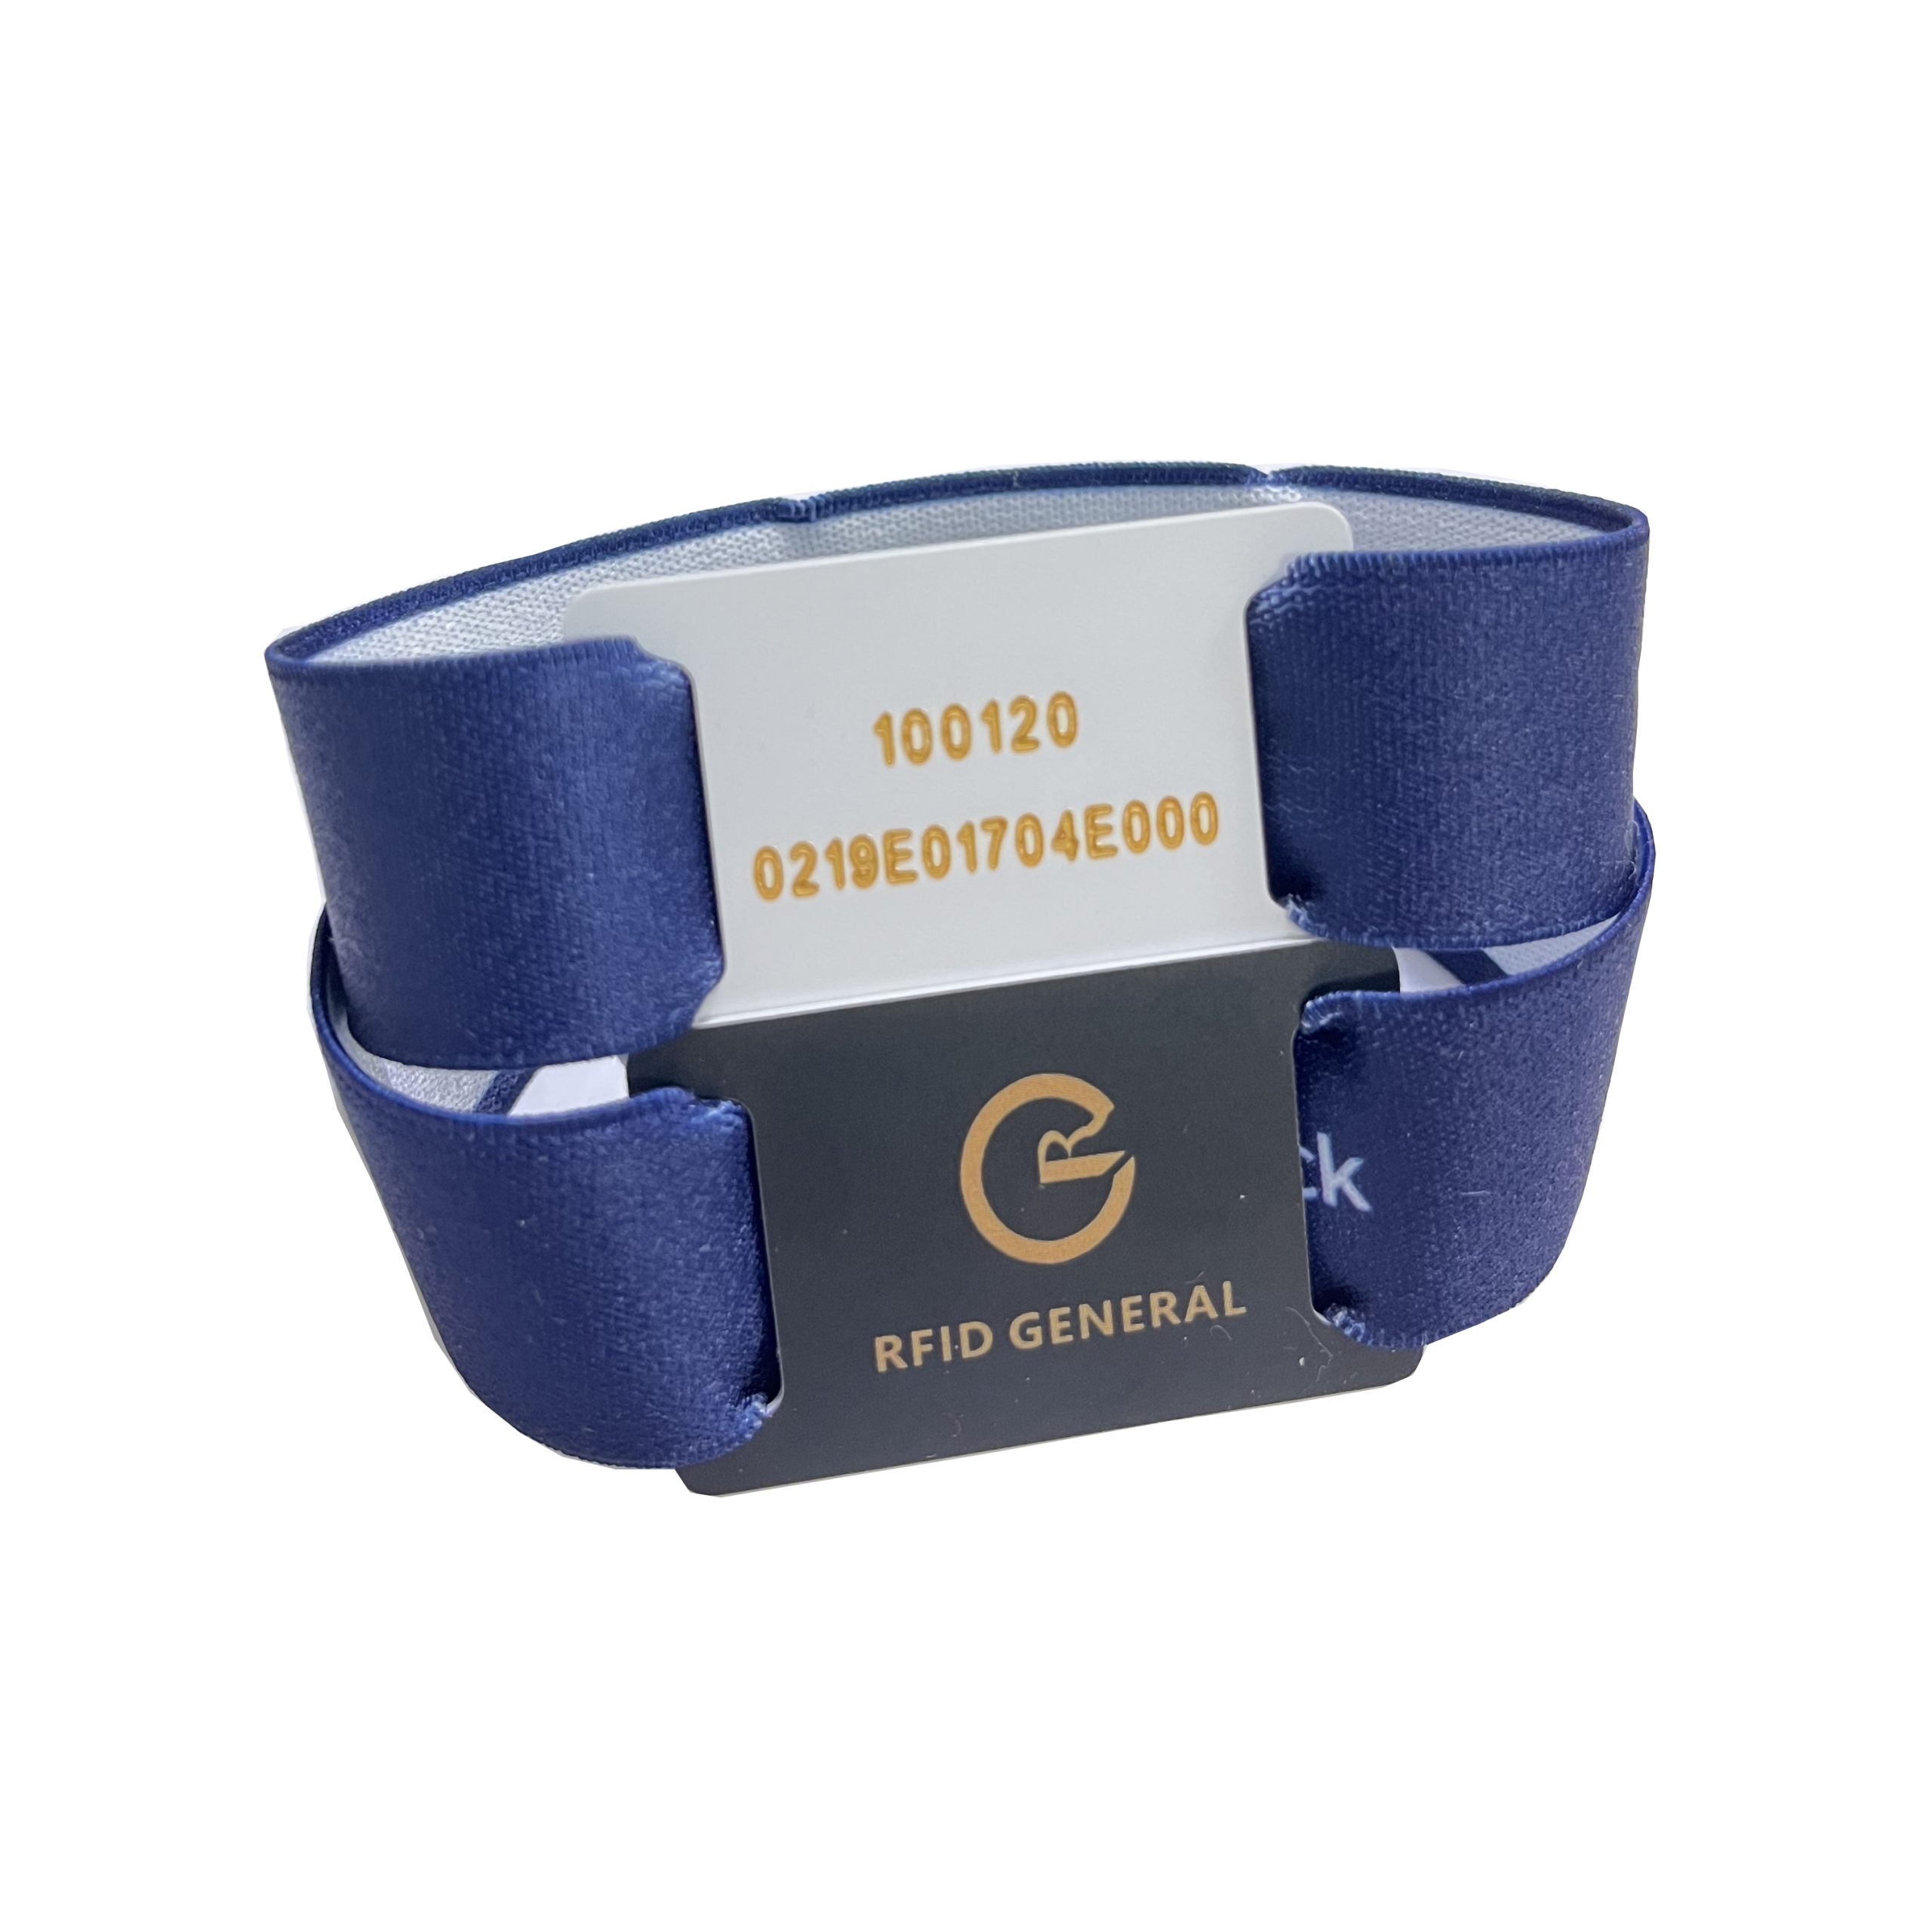 RG elasitc wristband bracelet with hard PVC card scaled